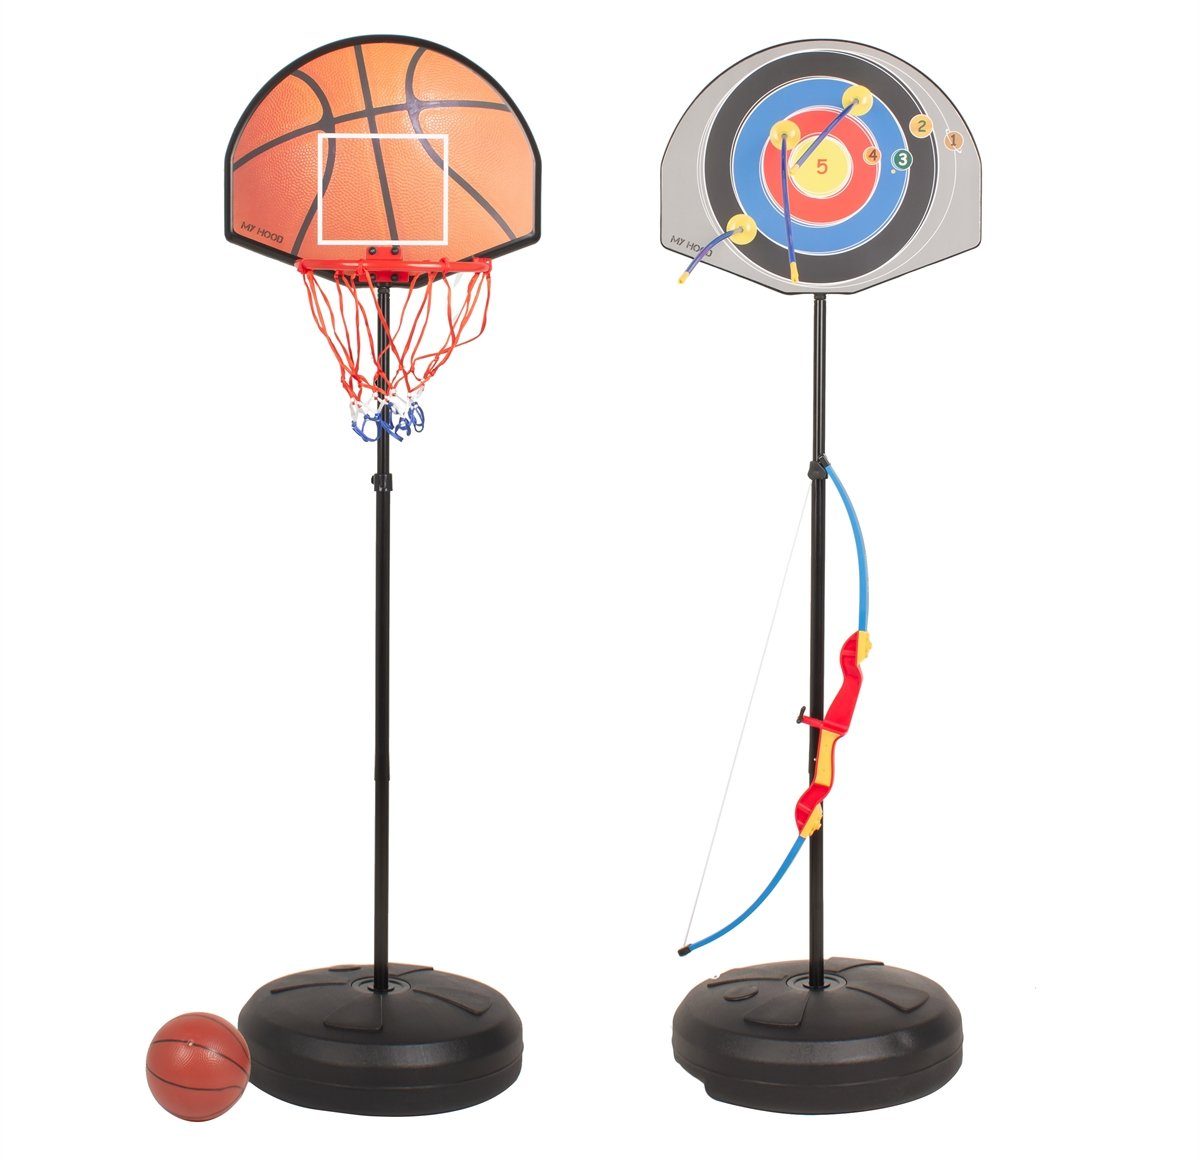 Zielscheibe, Basketballständer Europlay und Pfeil mit Bogen 2-in-1,